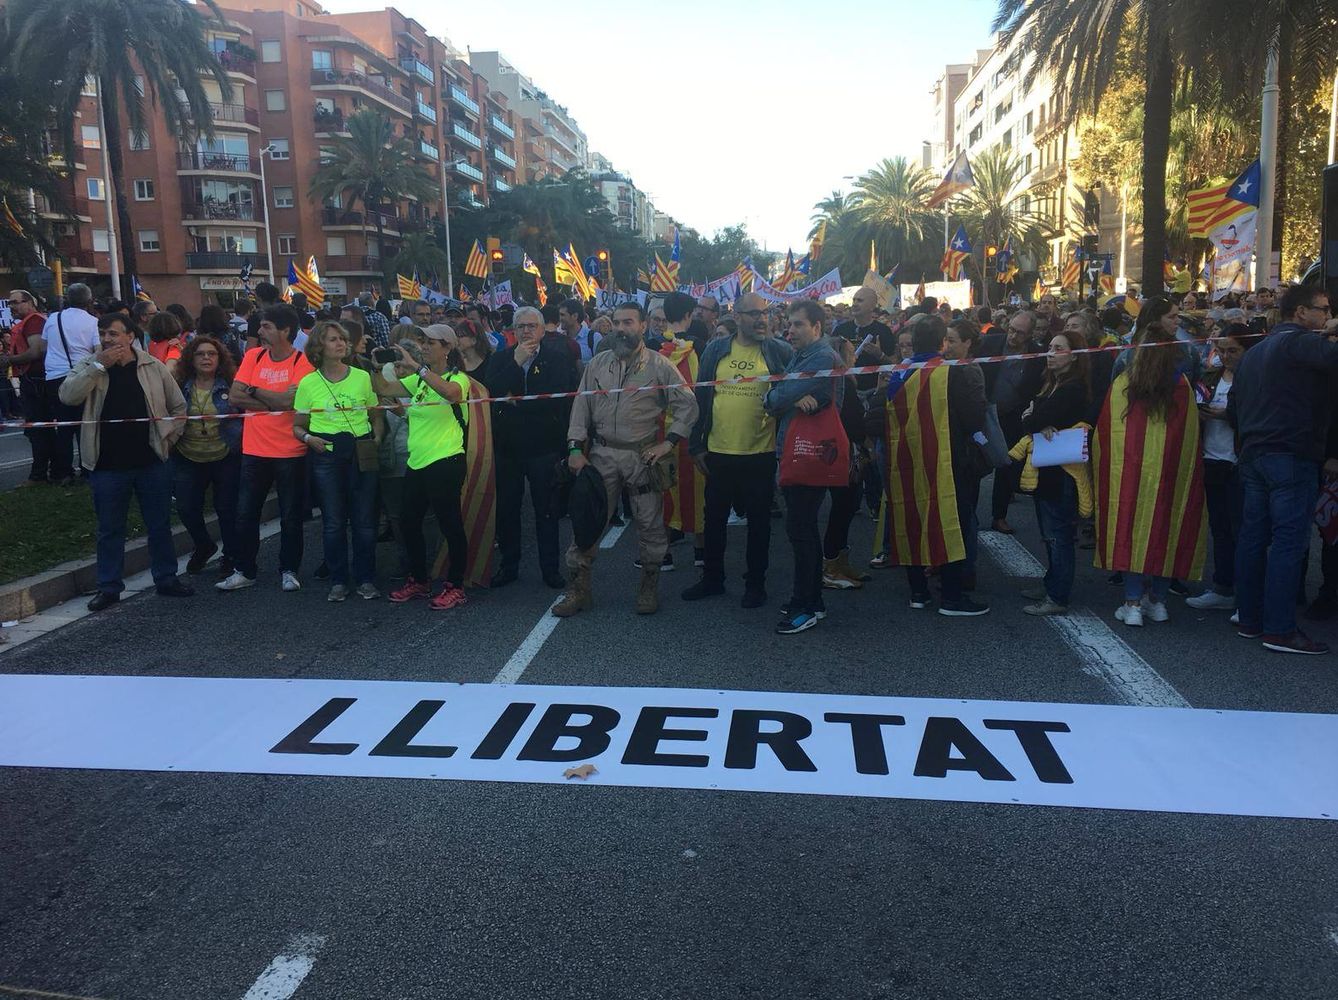 La presidenta de la Assemblea Nacional de Catalunya , Elisenda Paluzie, encabeza la marcha. (Marcos García Rey)